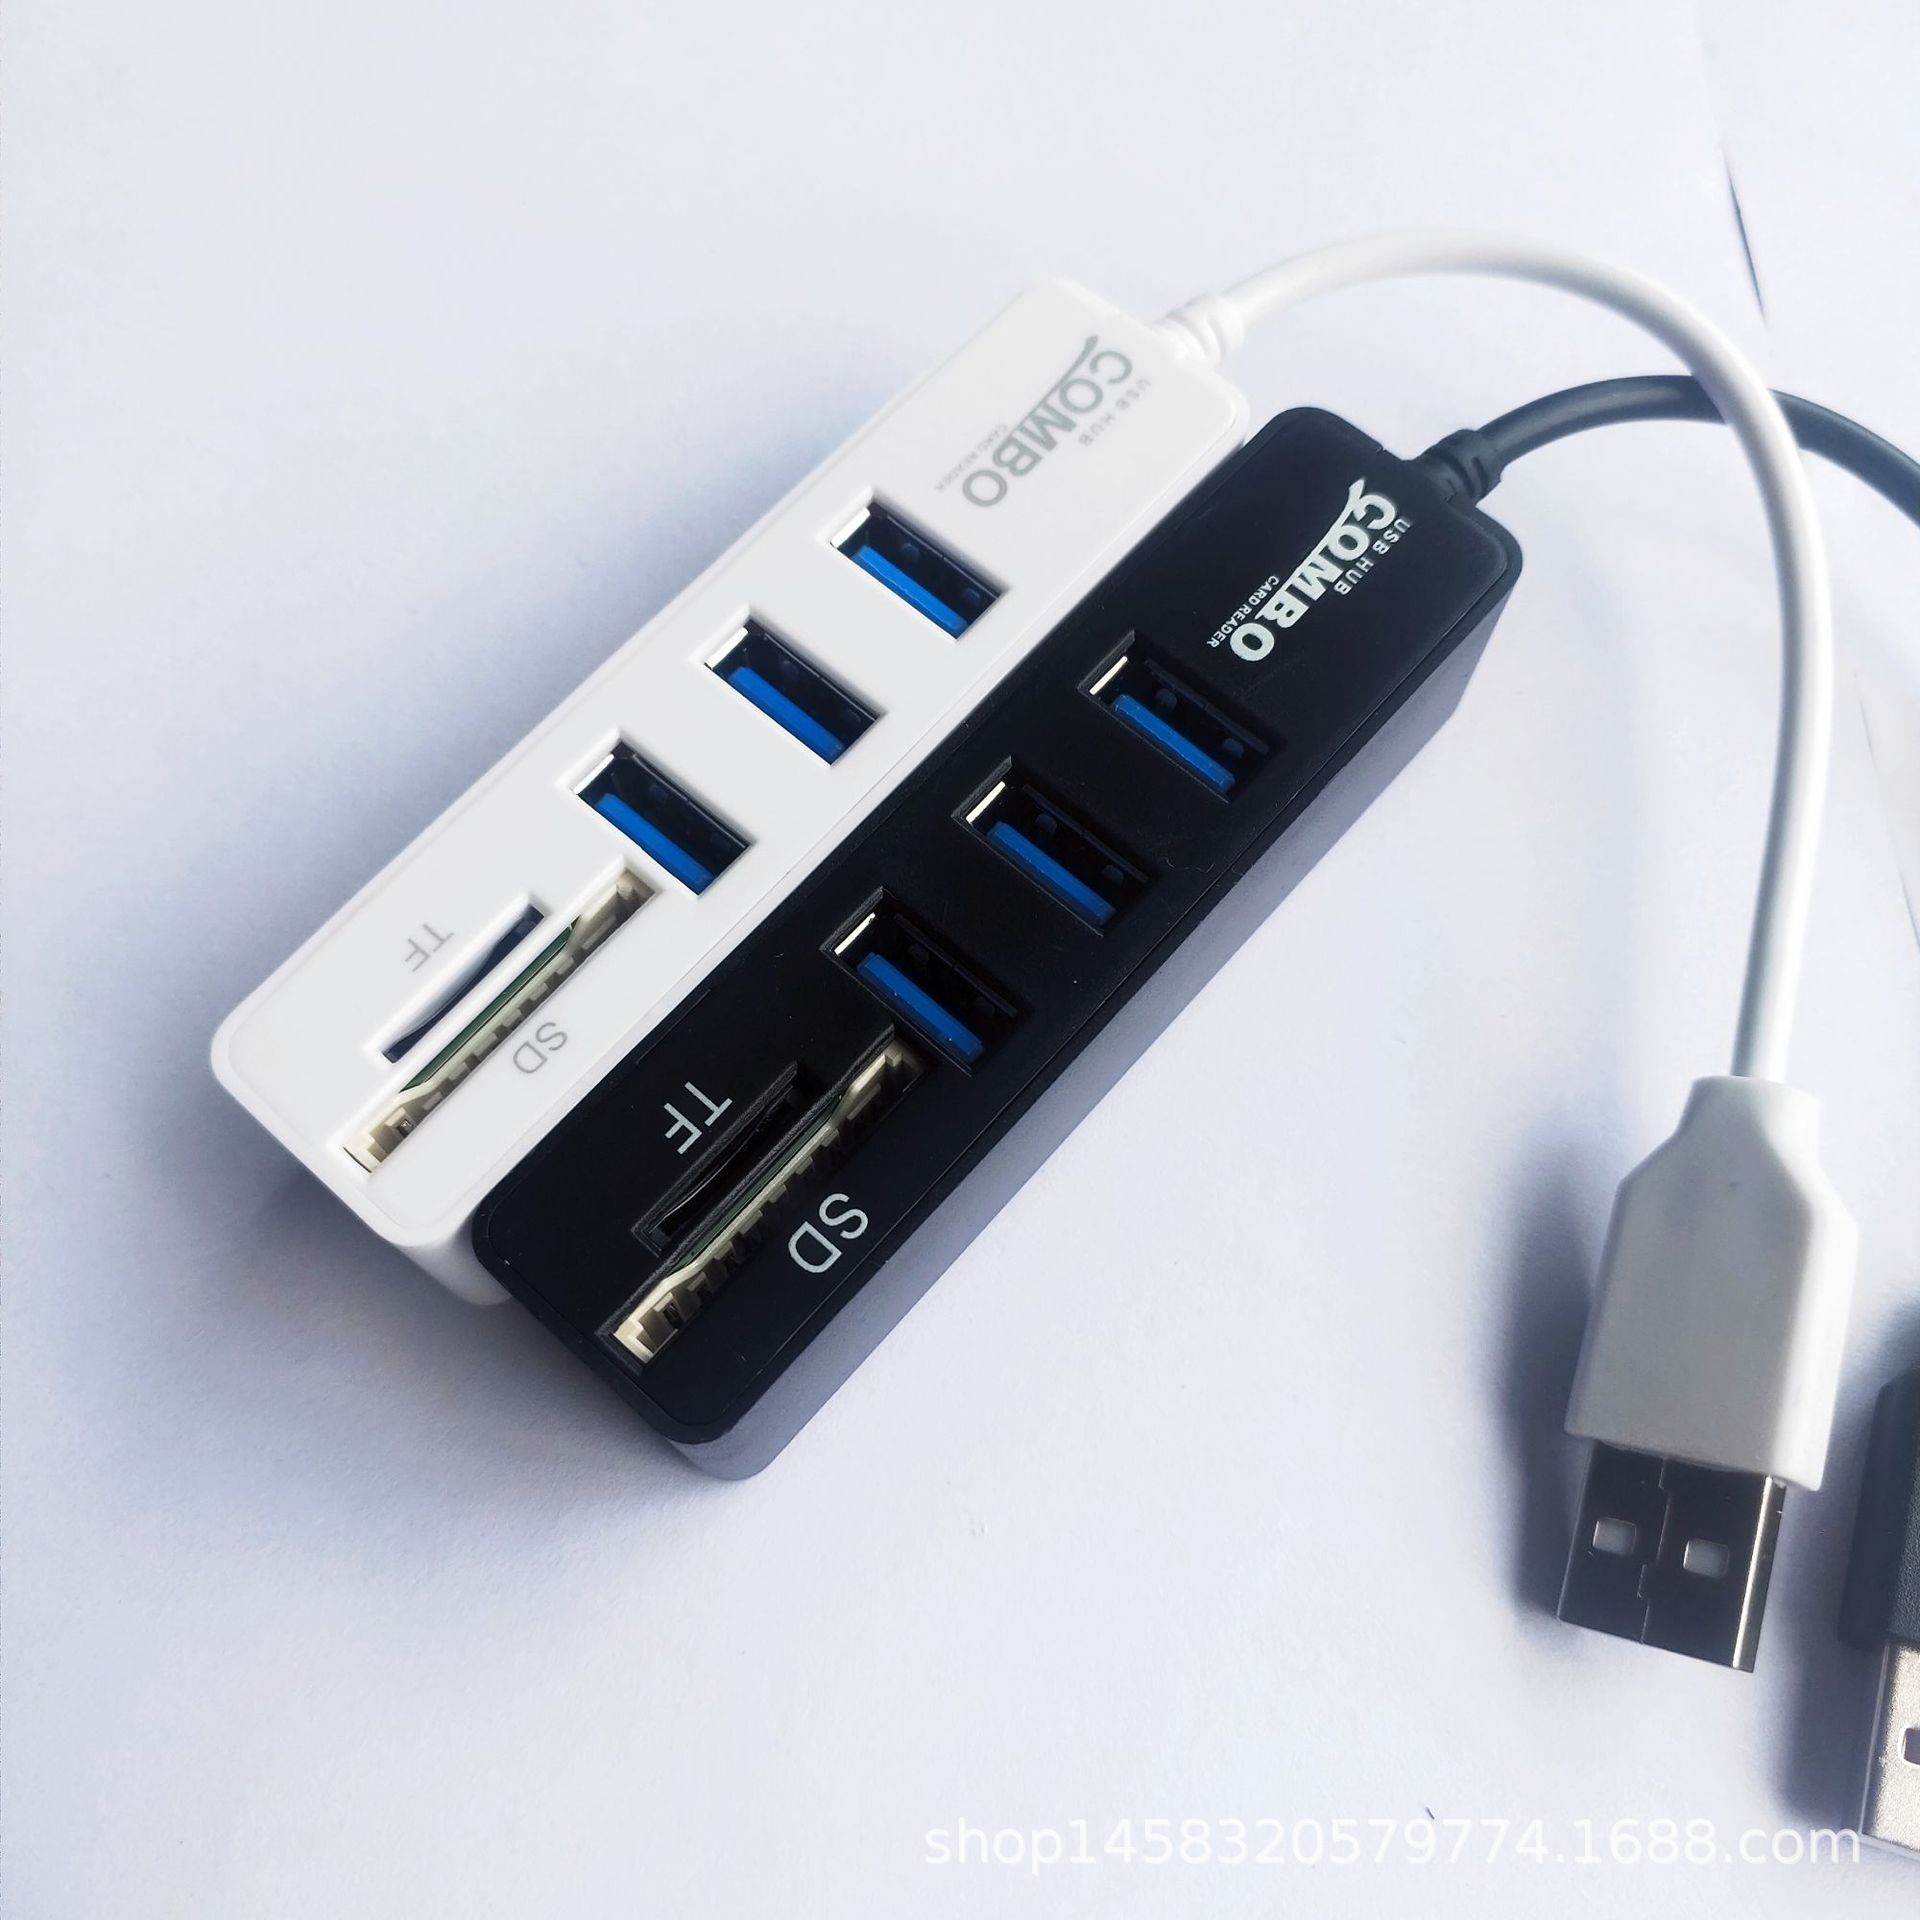 厂家直销 usbhub 2.0集线器 SD /TF多合一 读卡器 USB3+2拓展器